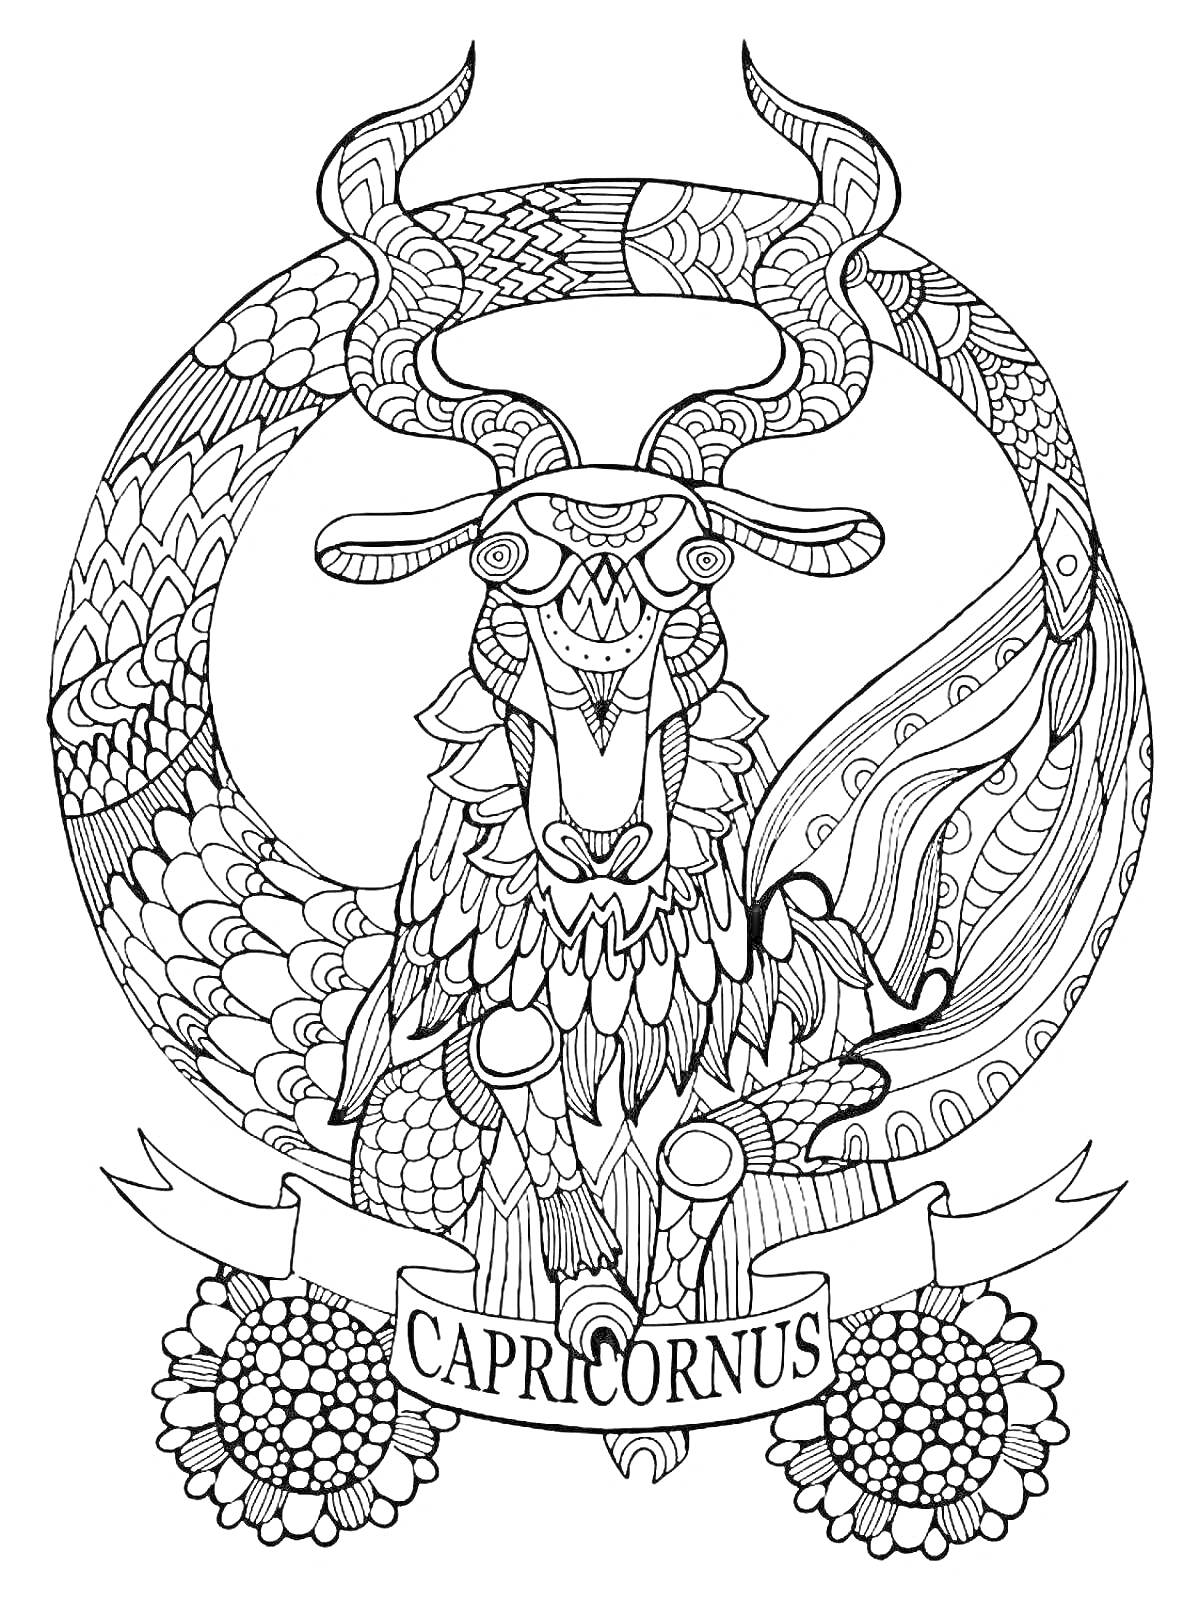 Раскраска Раскраска с изображением знака зодиака Козерог с завитками, рогами, баннером с надписью 